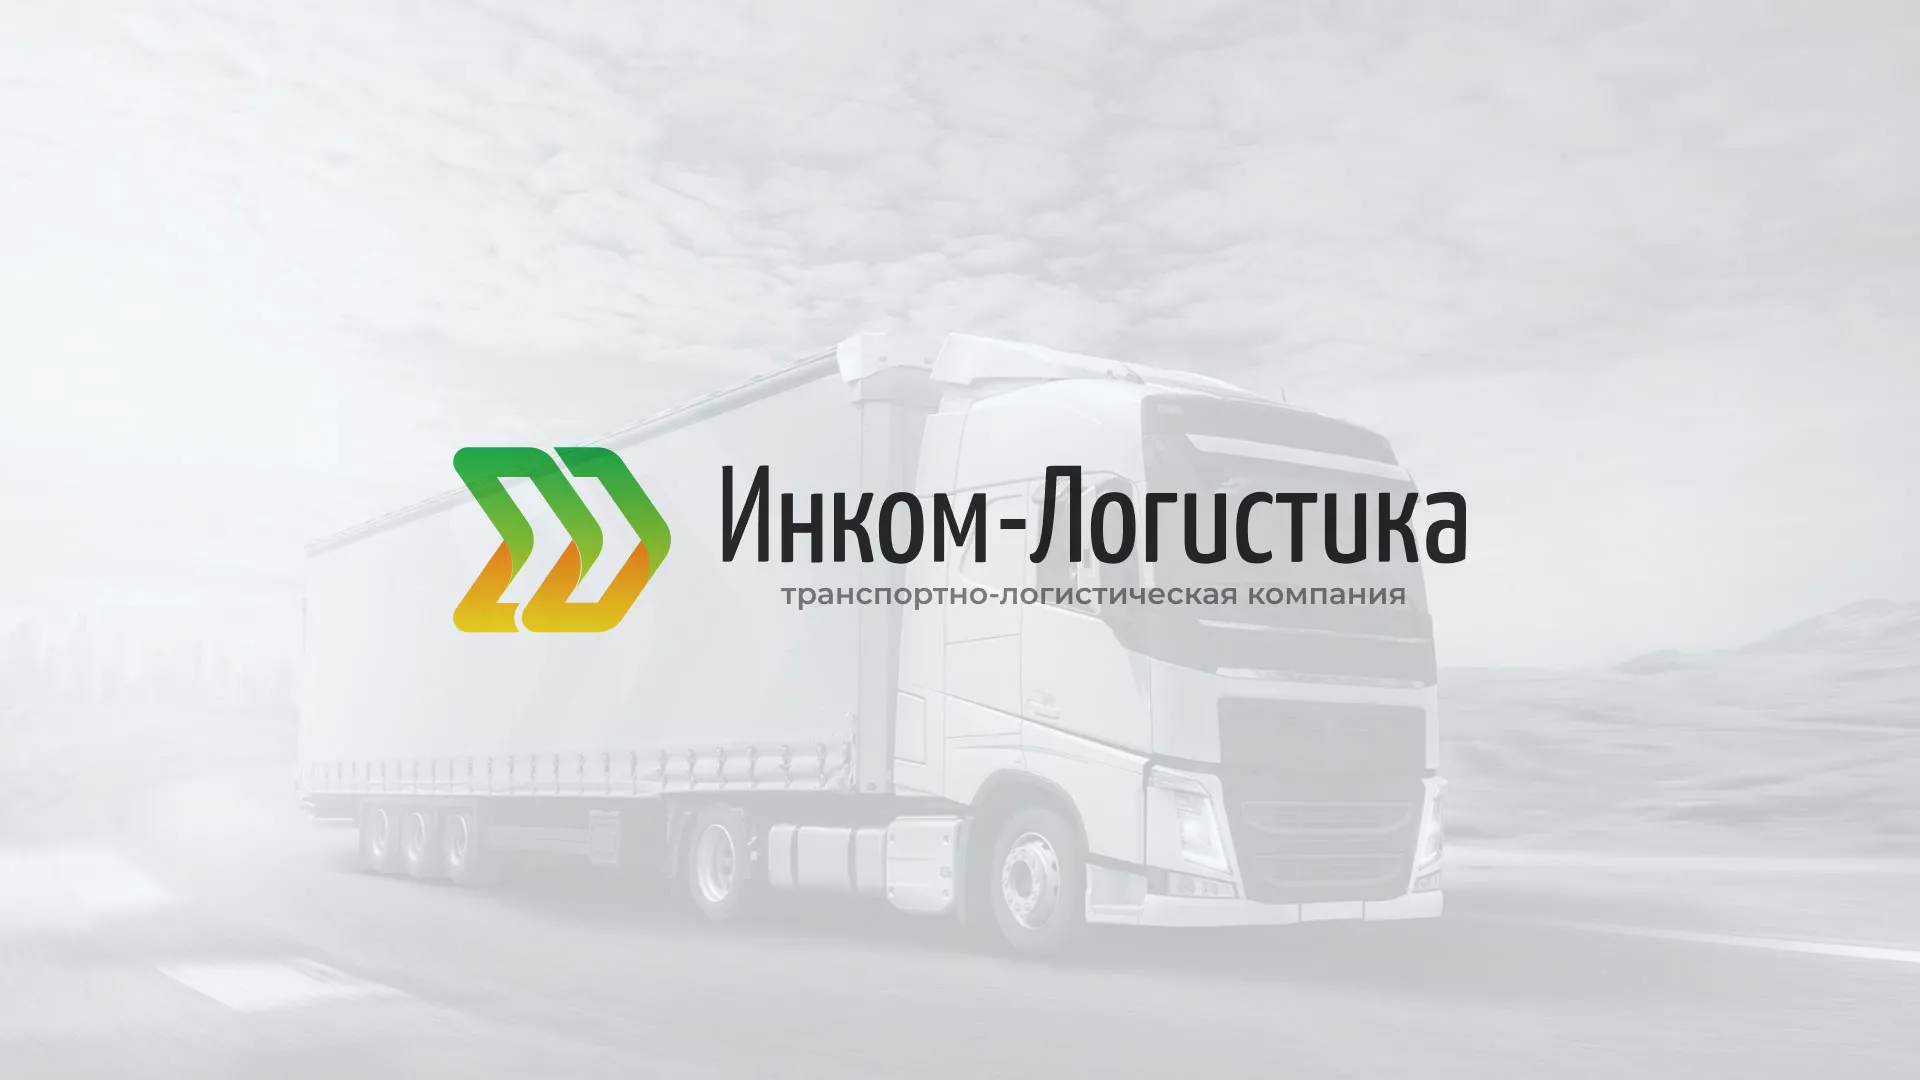 Разработка логотипа и сайта компании «Инком-Логистика» в Дмитровске